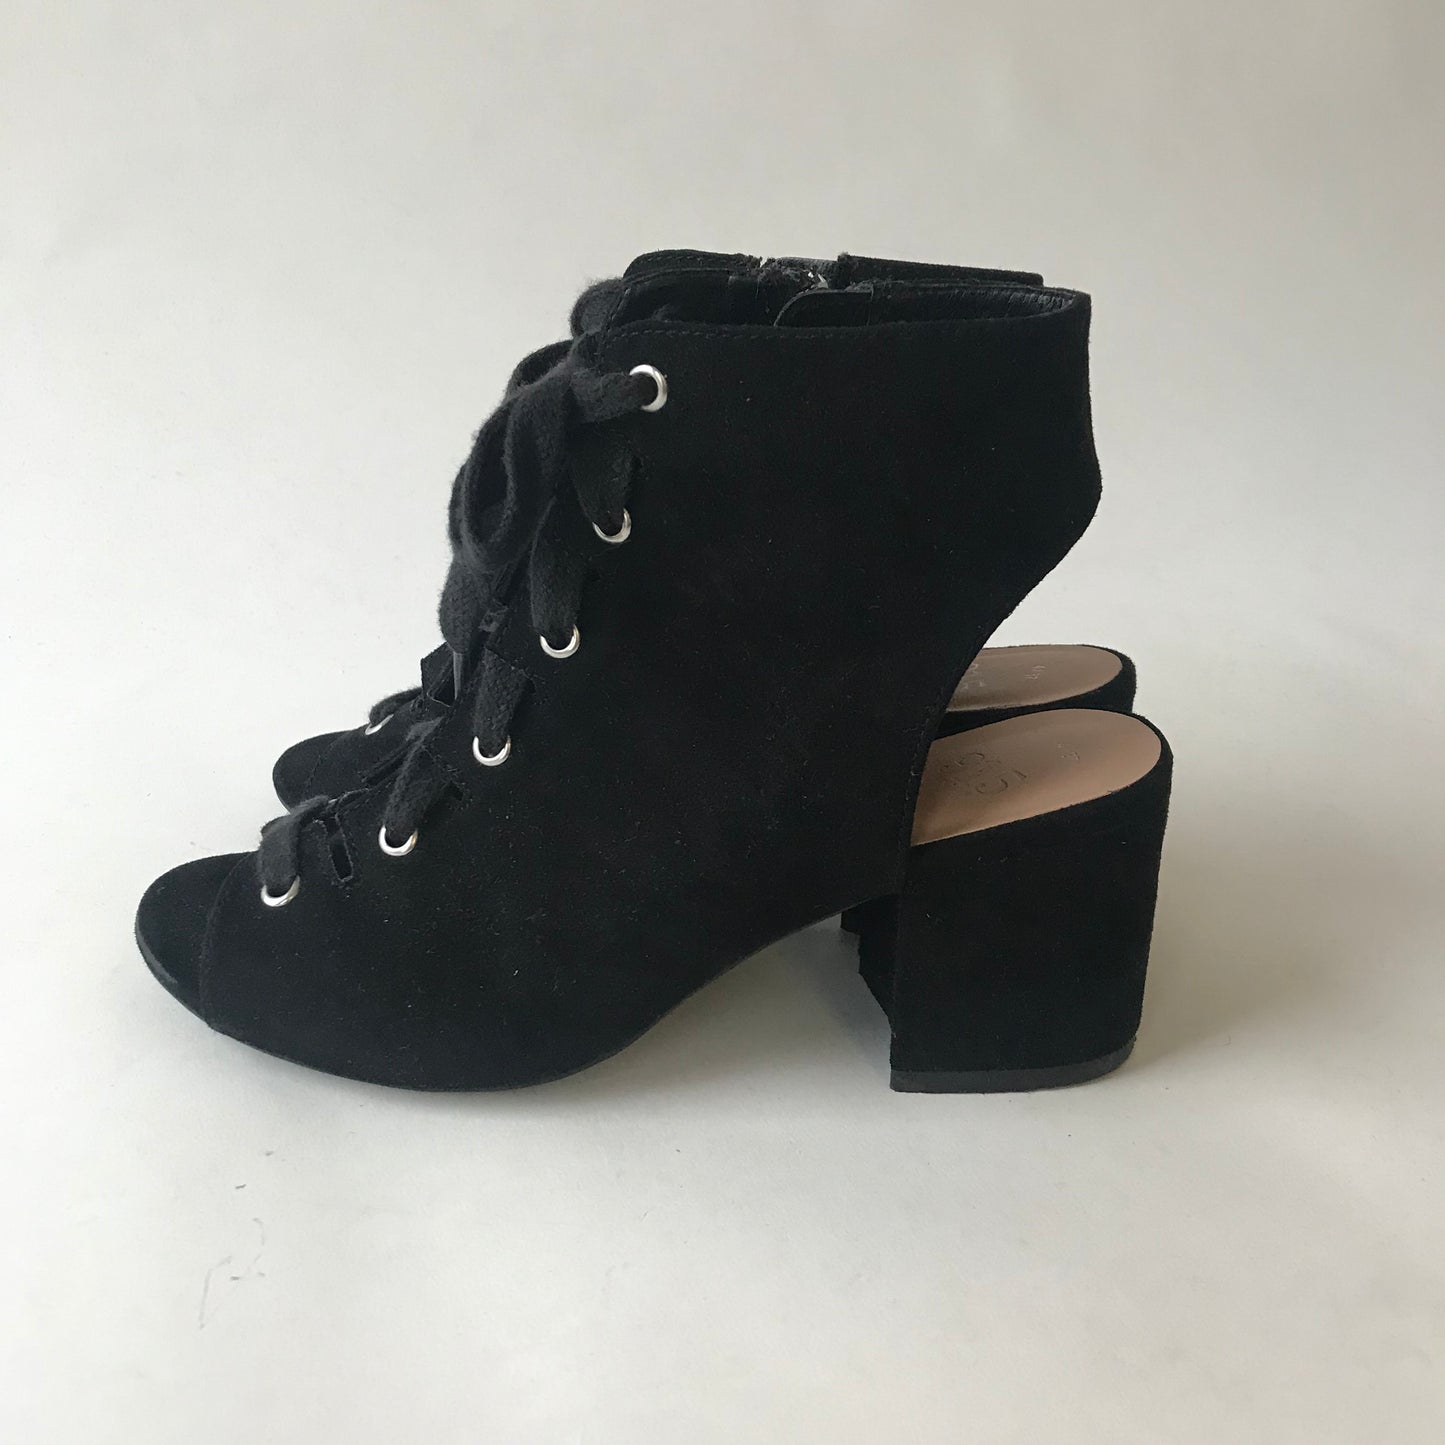 New Look Black Heels Shoe Size 4